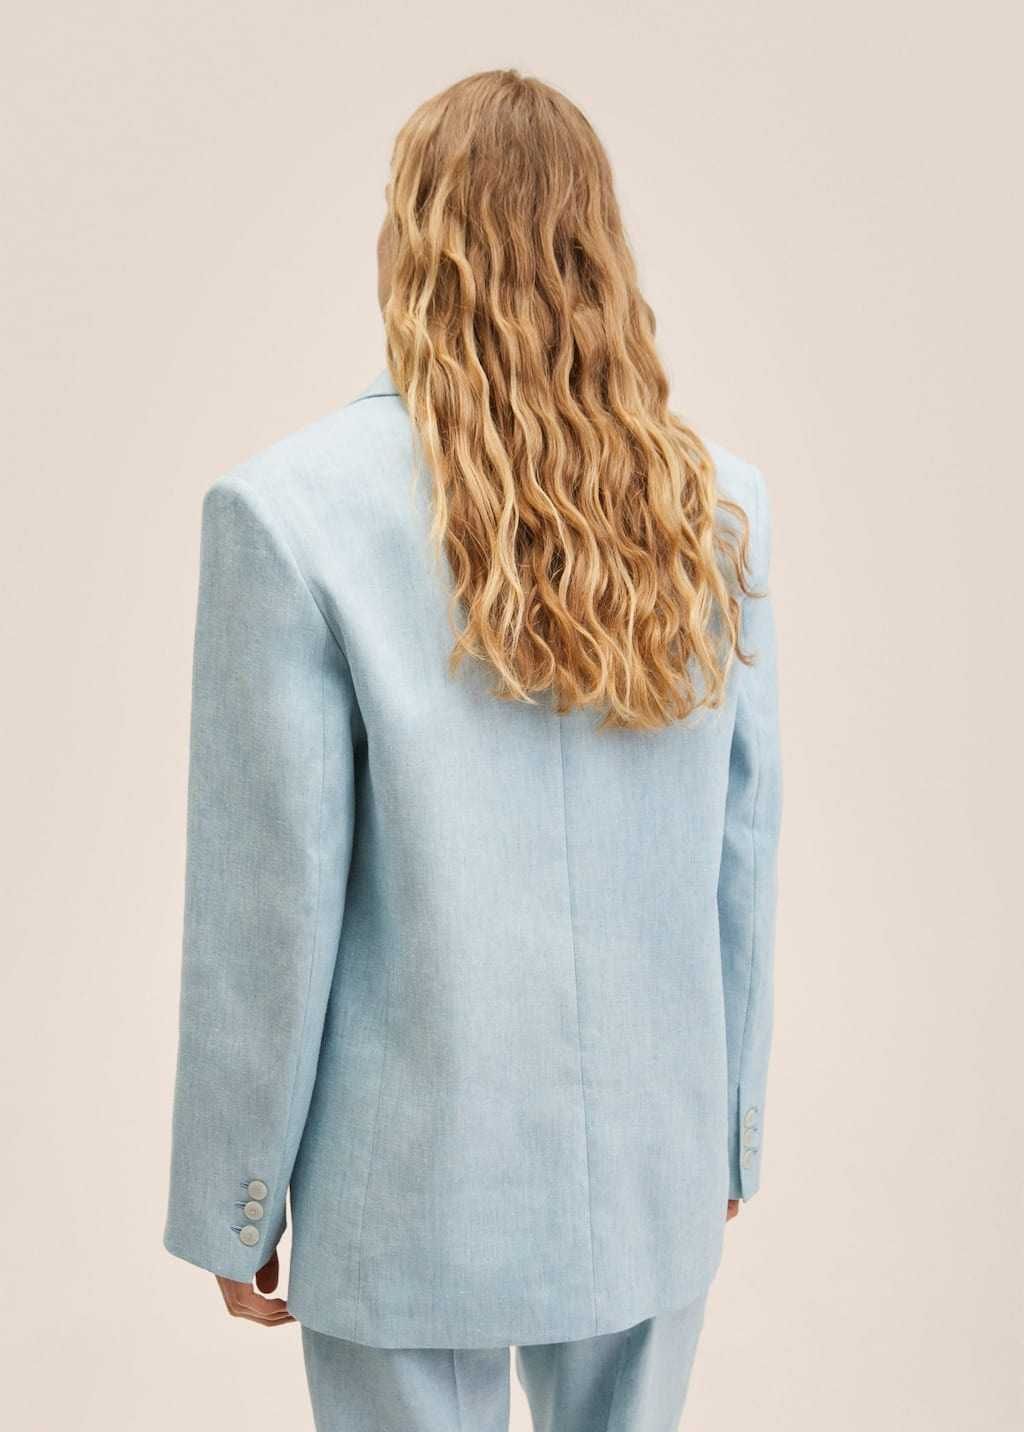 Шикарный блейзер пиджак от Mango новая коллекция Лен оверсайз